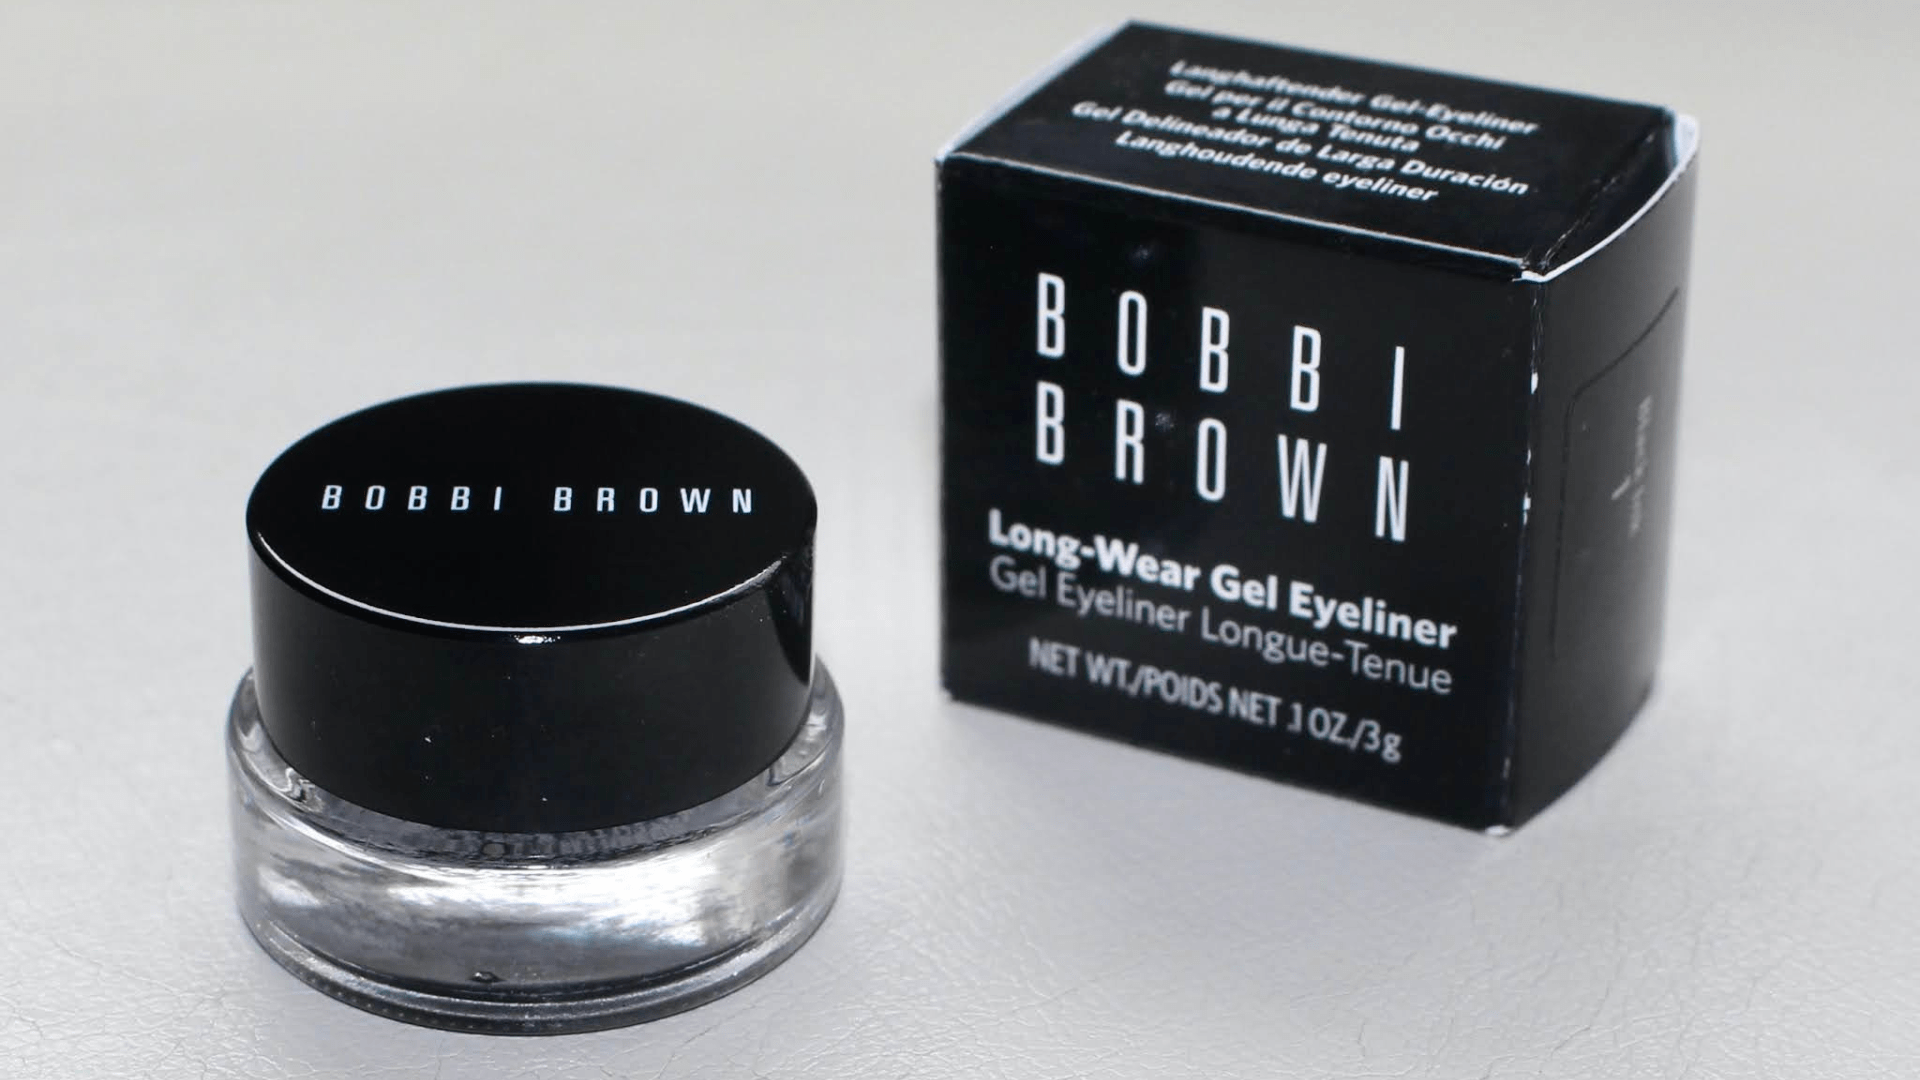 Bobbi Brown Long-Wear Gel Eyeliner sở hữu công thức tạo ra đường eyeliner trơn mịn, cực đơn giản